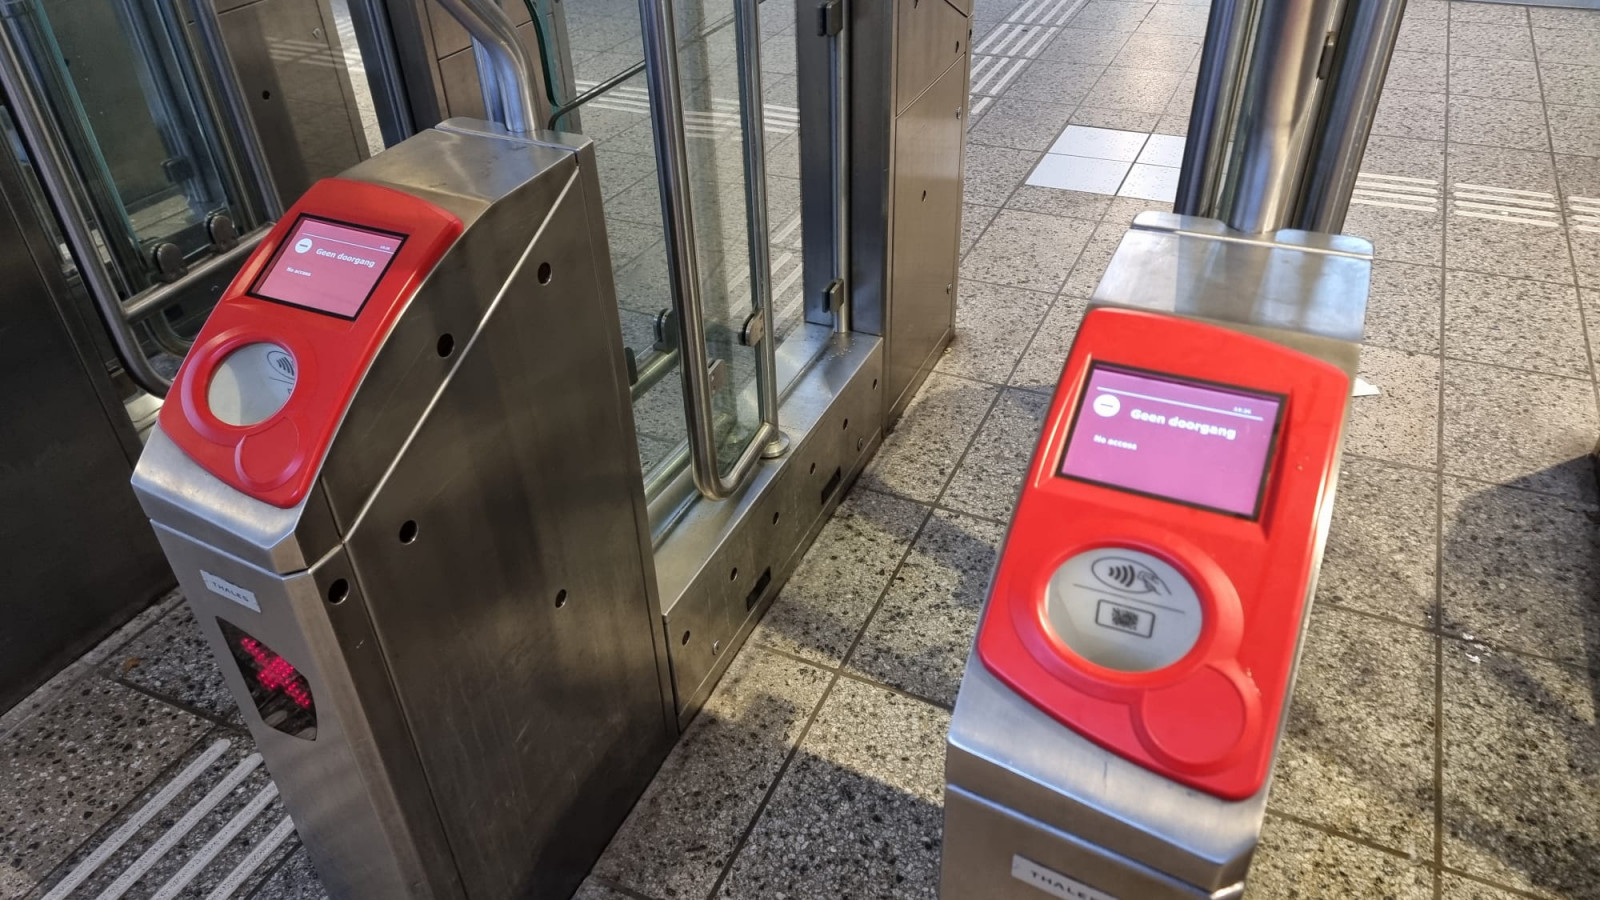 Poortjes metrostation noodtoestand ingetrapt